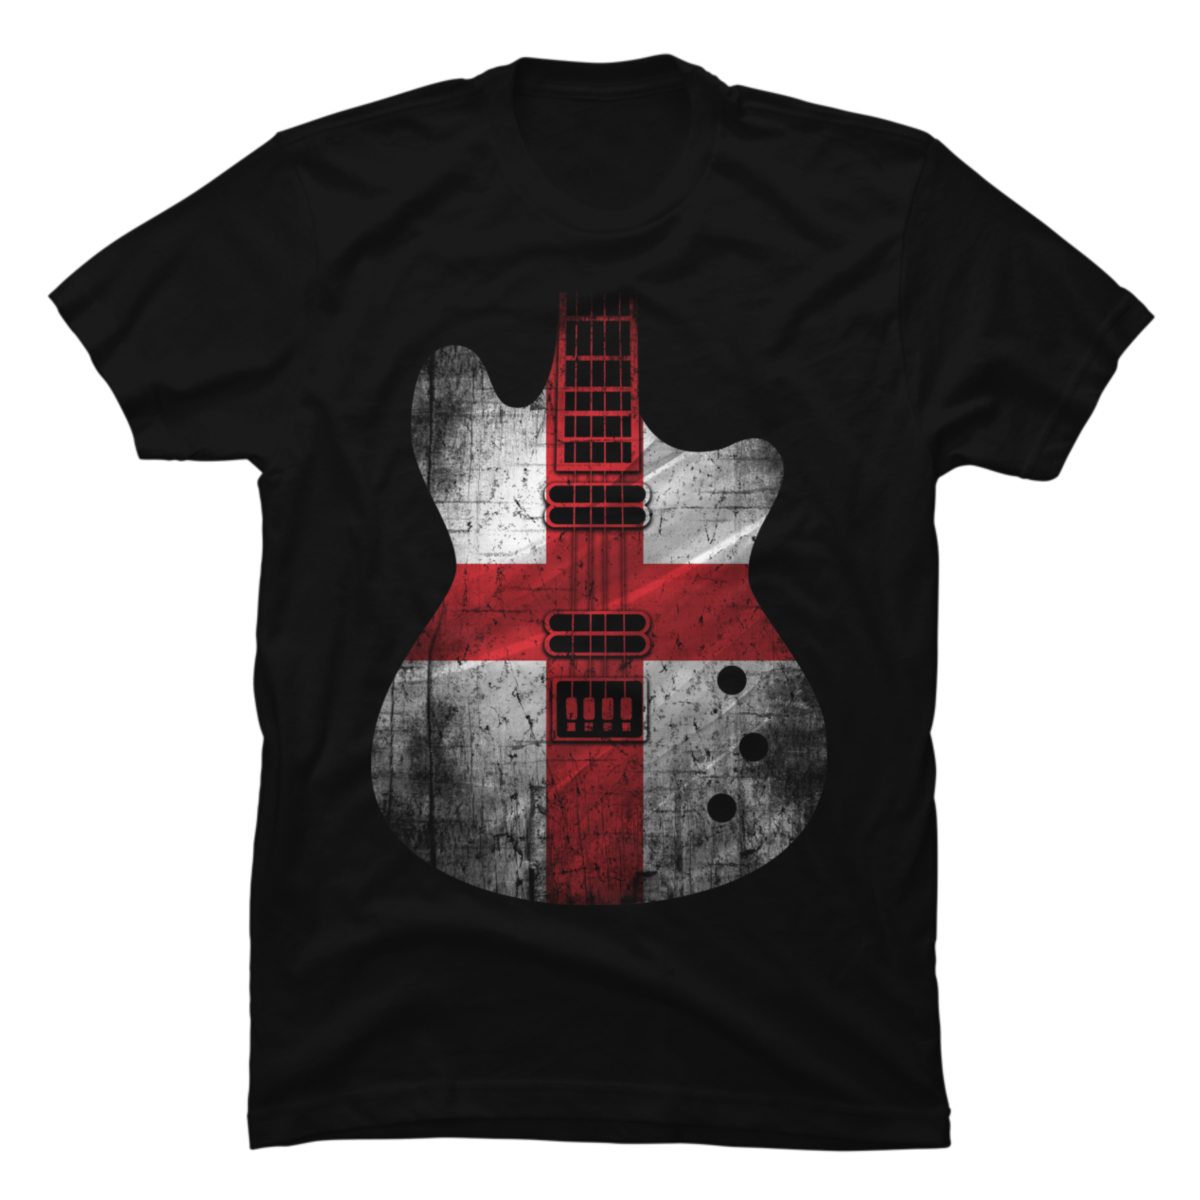 Guitar Flag England,present tshirt - Buy t-shirt designs